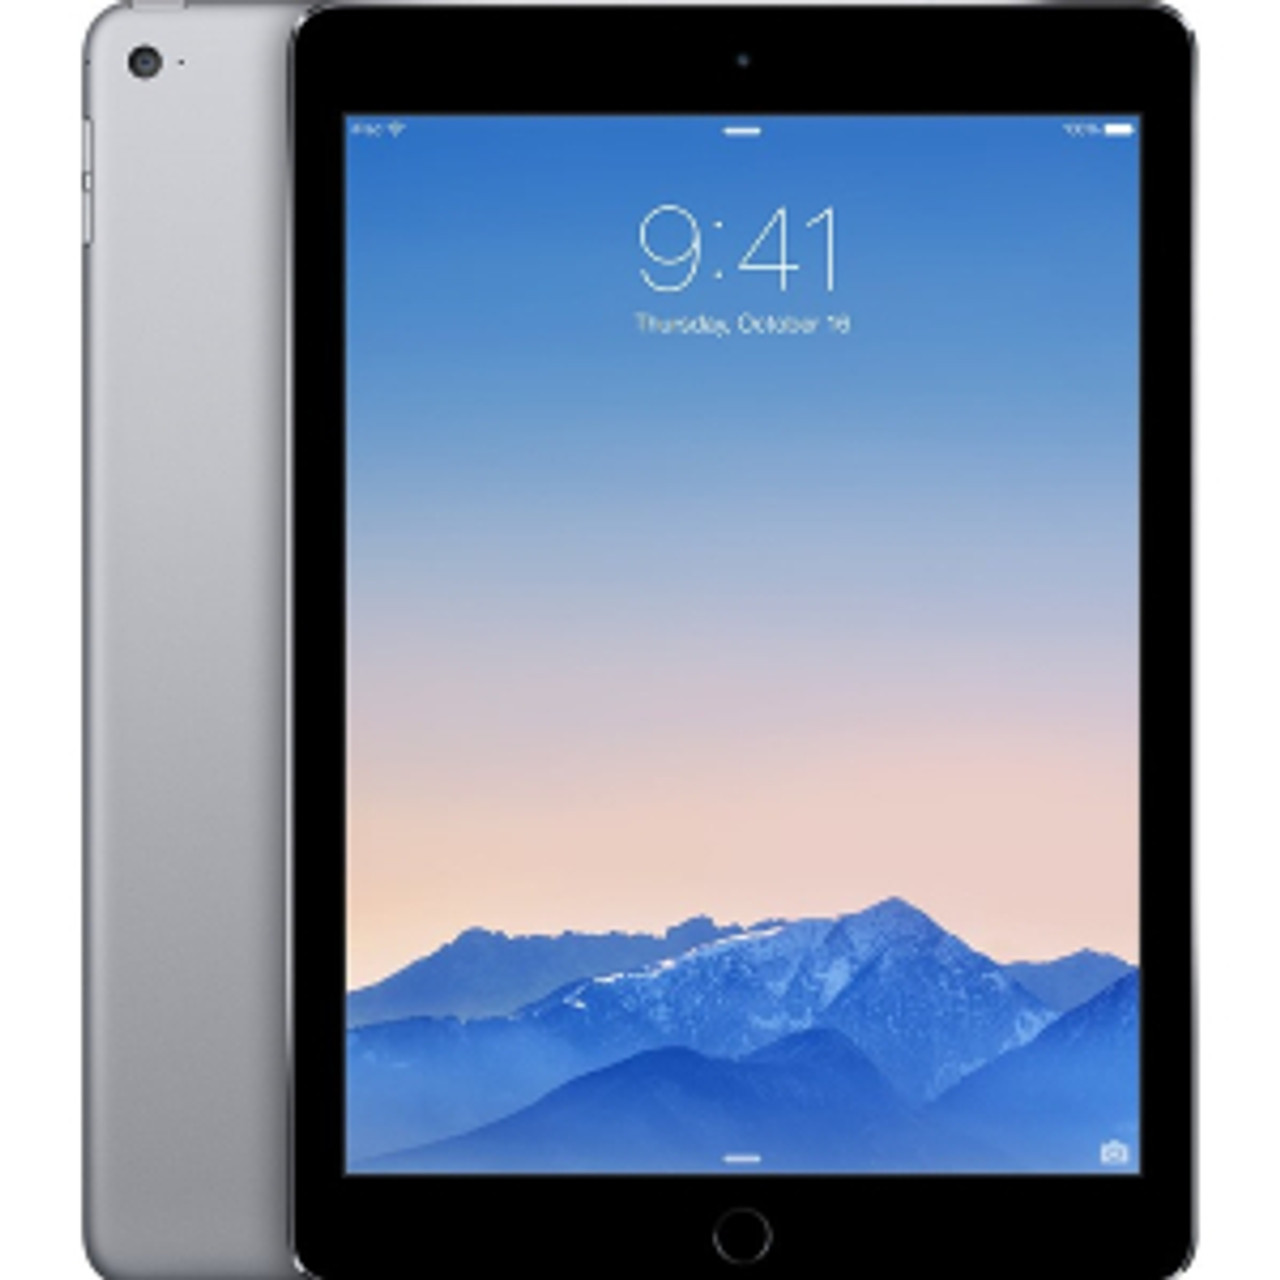 Fair Condition*: Apple iPad Air 2 Wi-Fi 32GB - Space Gray MNV22LL/A